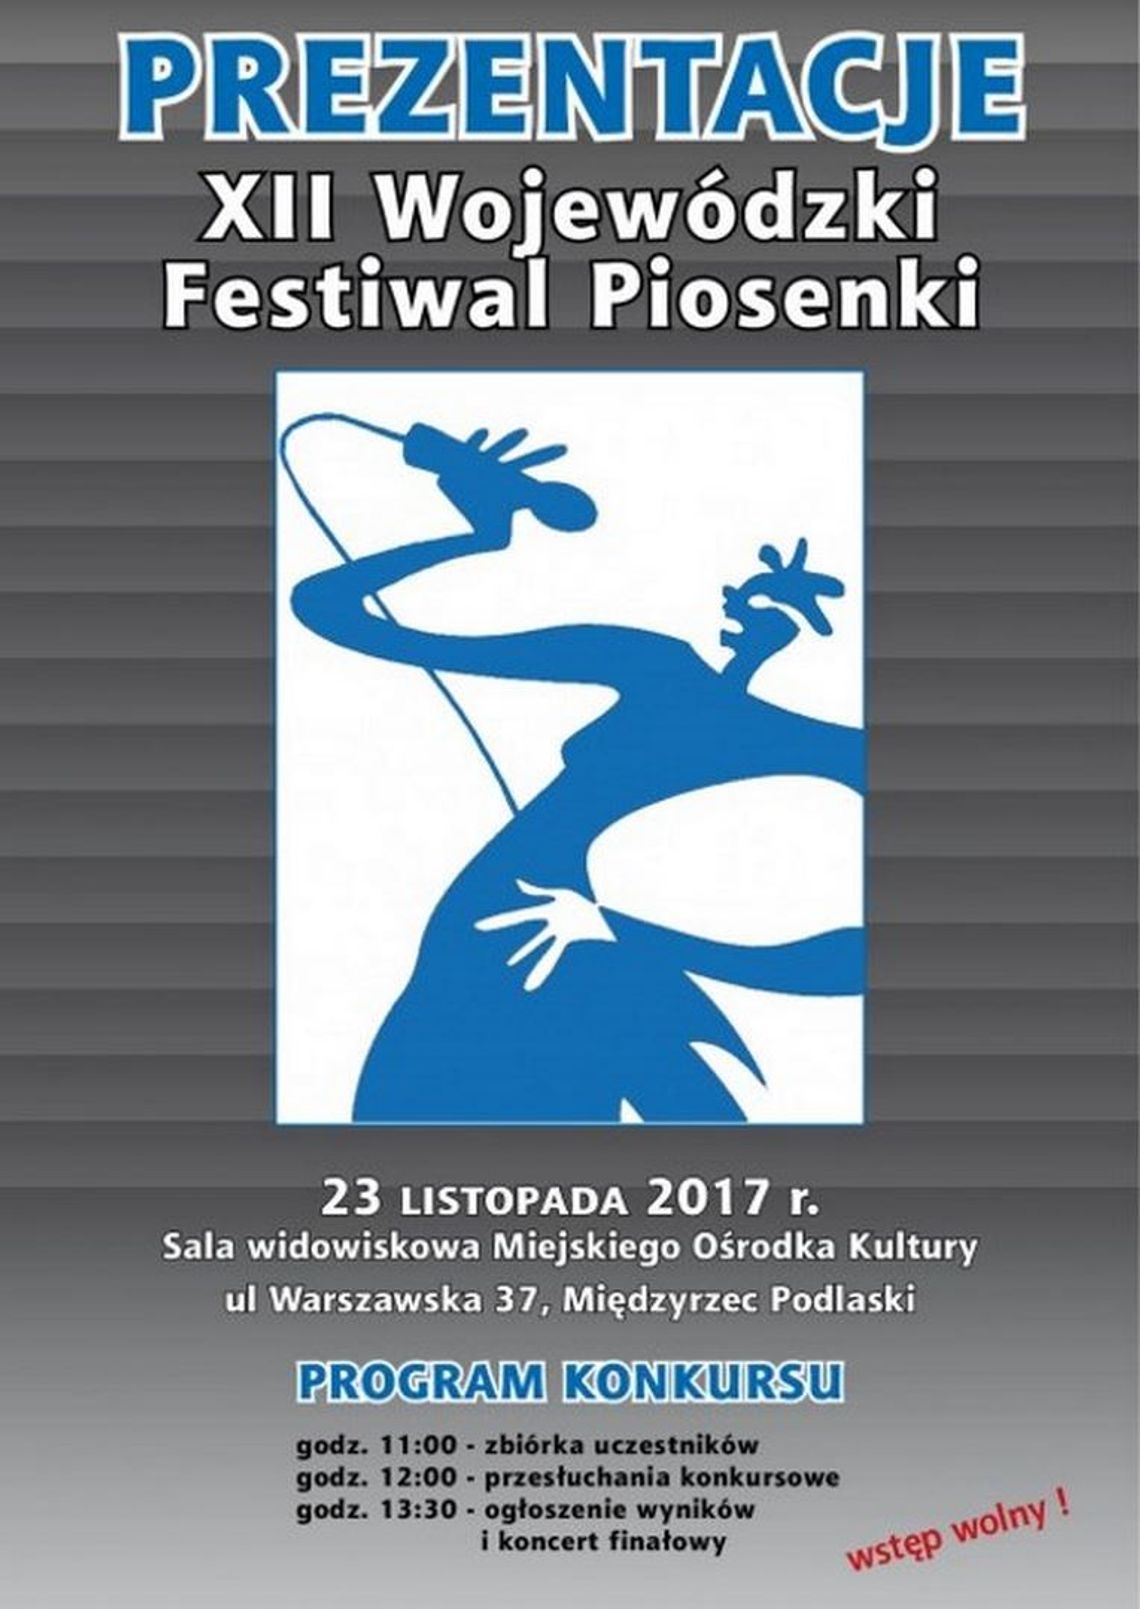 XII Wojewódzki Festiwal Piosenki "PREZENTACJE 2017"